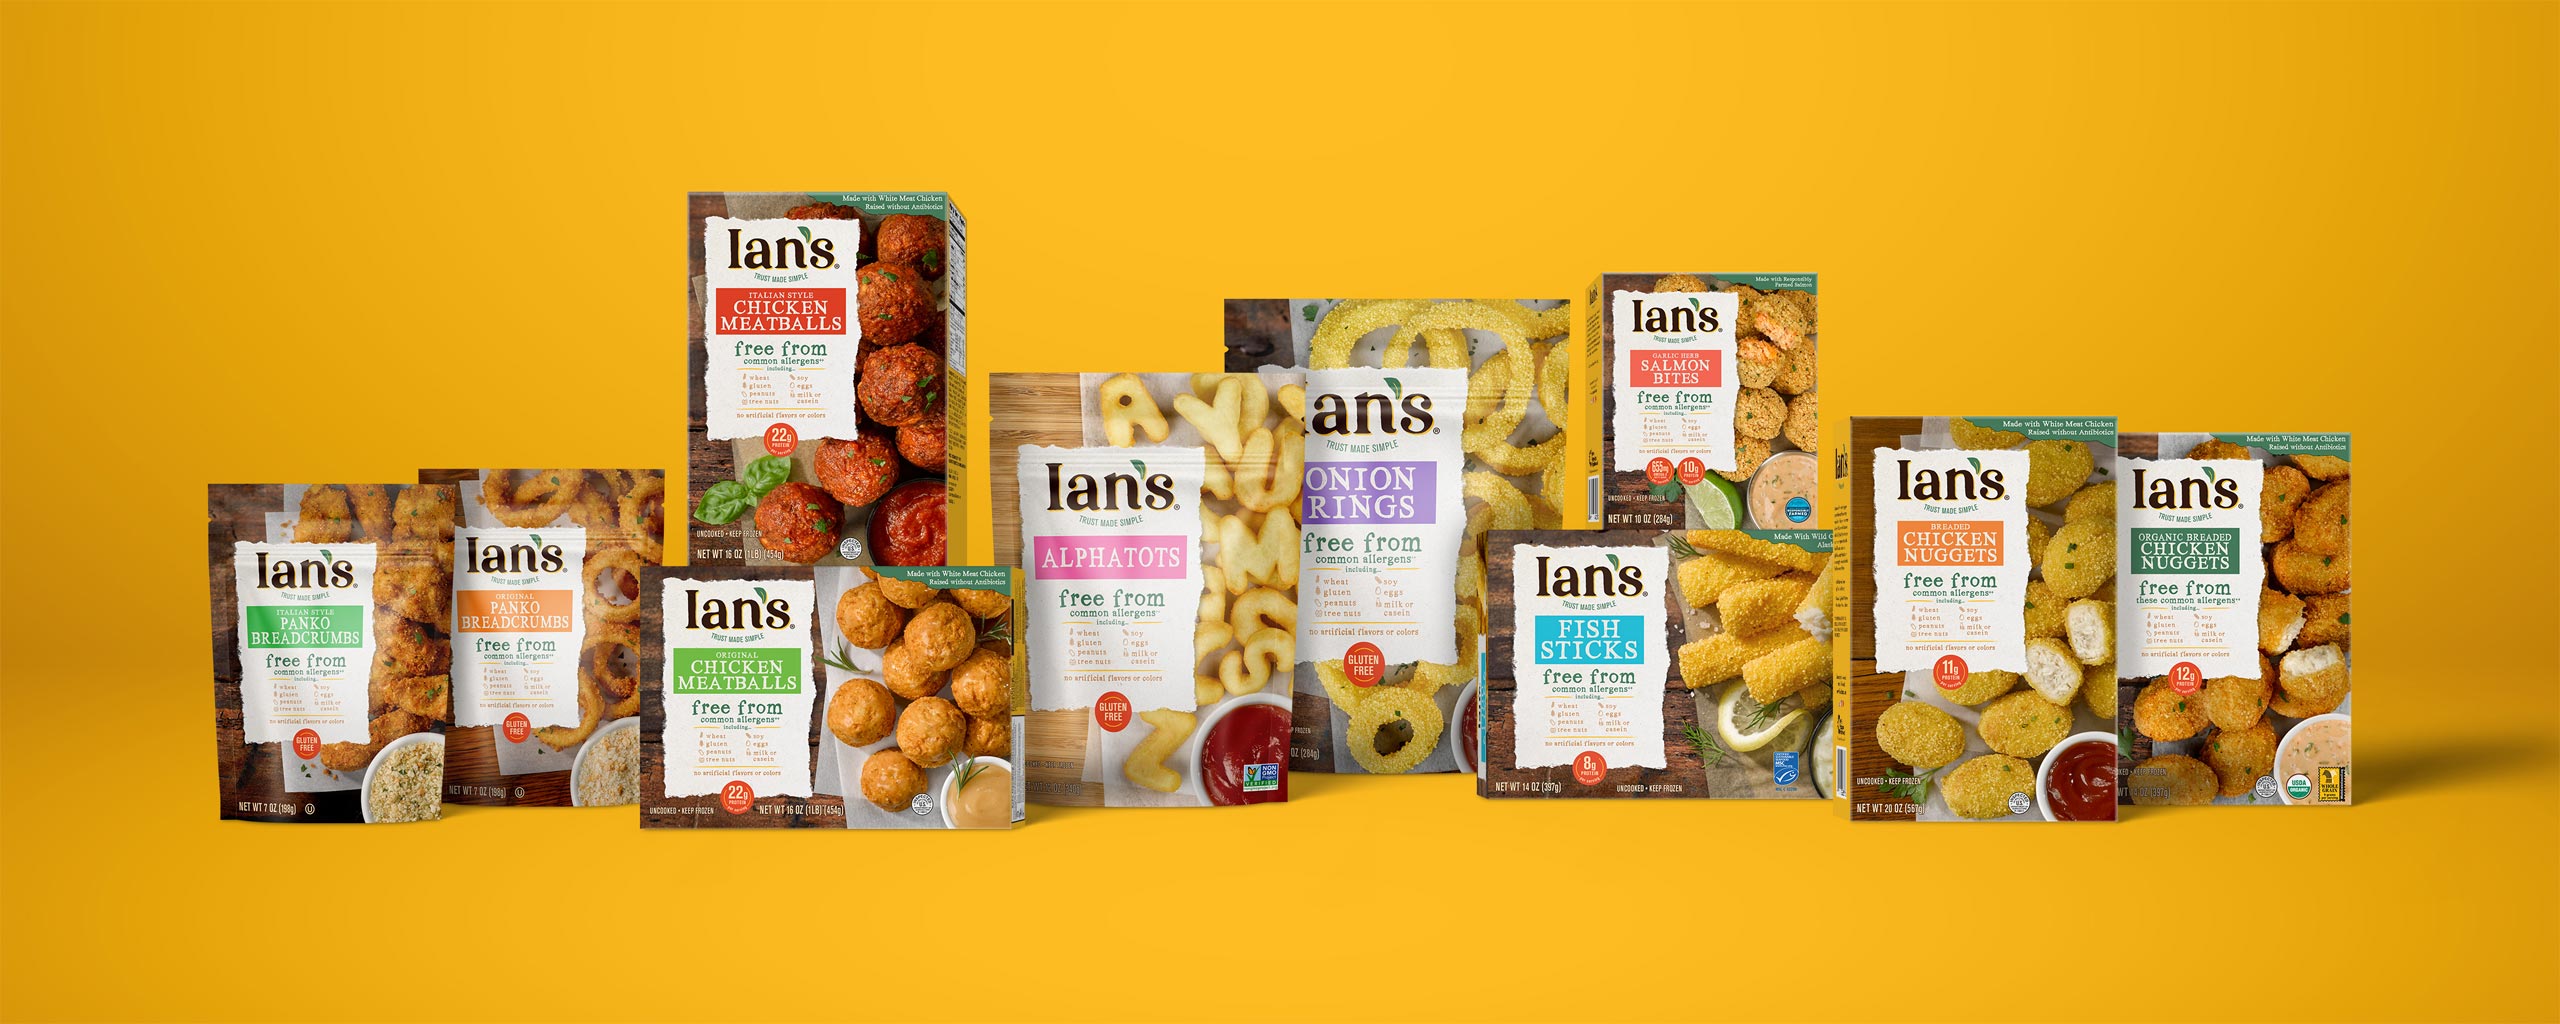 Ian’s Foods